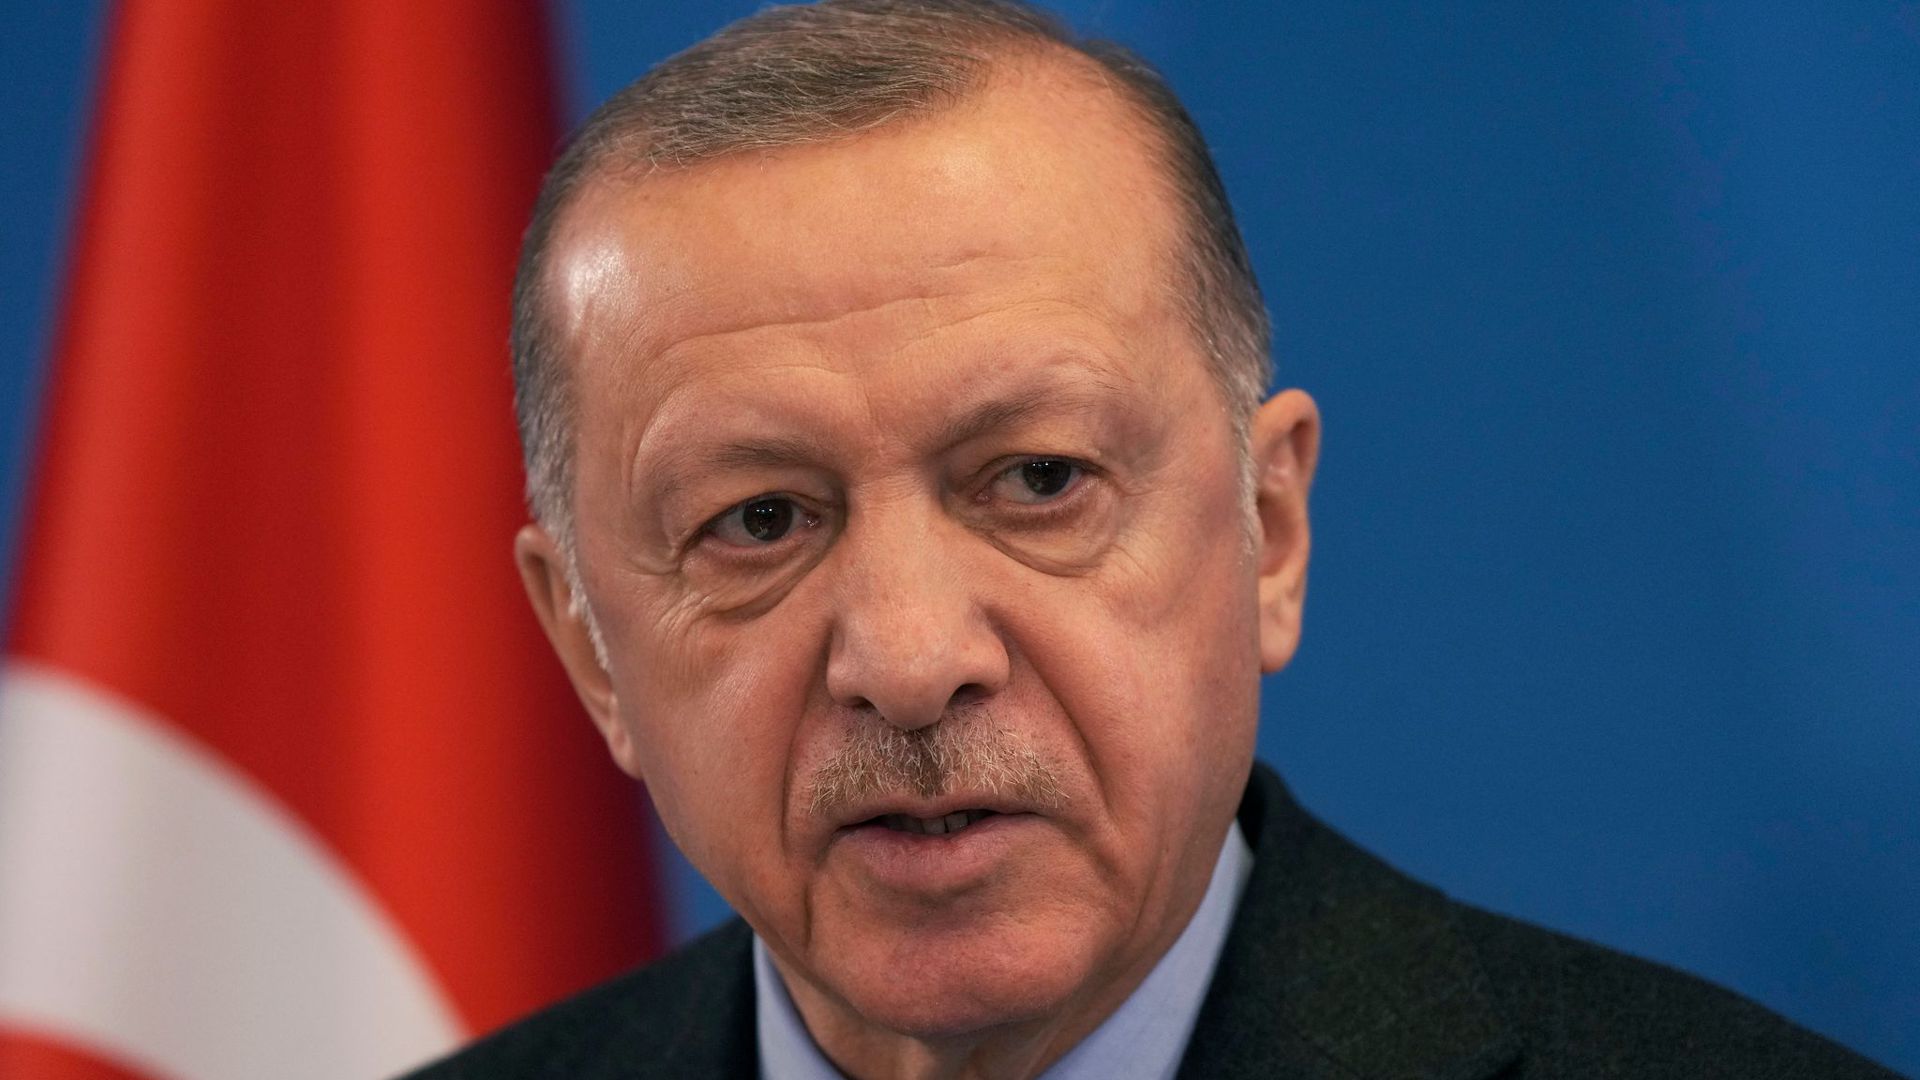 Die Türkei stellt Forderungen an Schweden für einen Nato-Beitritt.